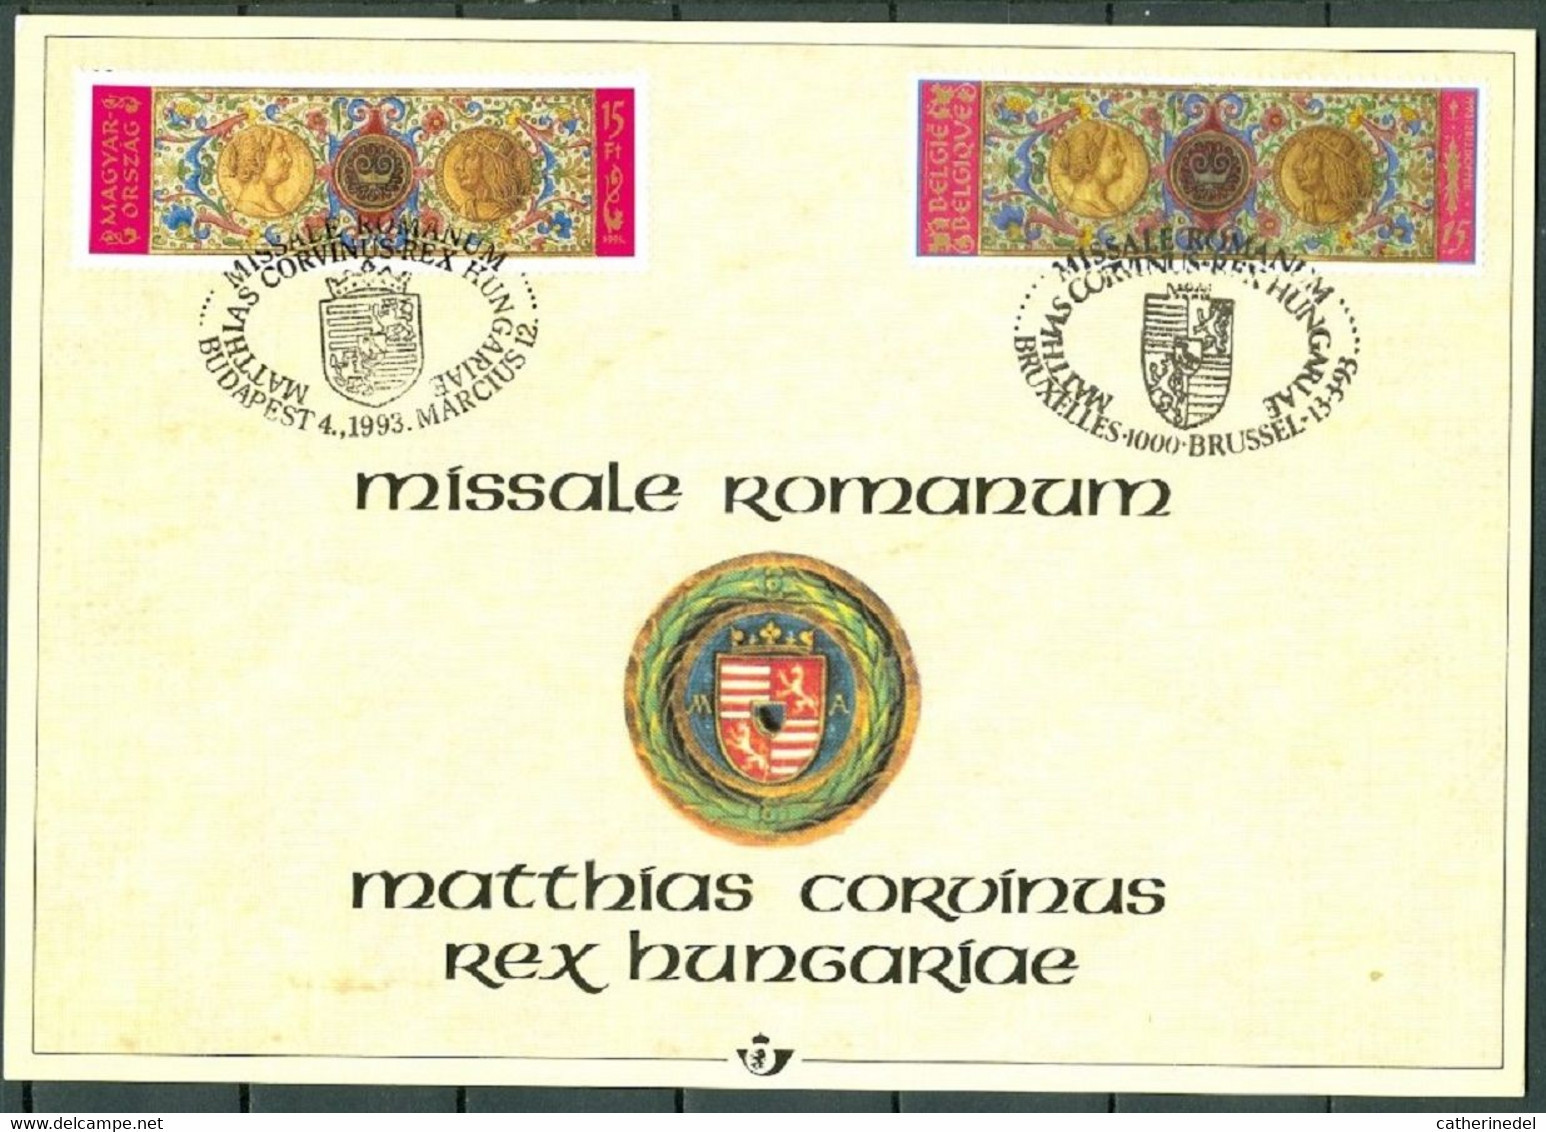 Année 1993 : Carte Souvenir 2492HK - Histoire - Missale Romanum - Souvenir Cards - Joint Issues [HK]